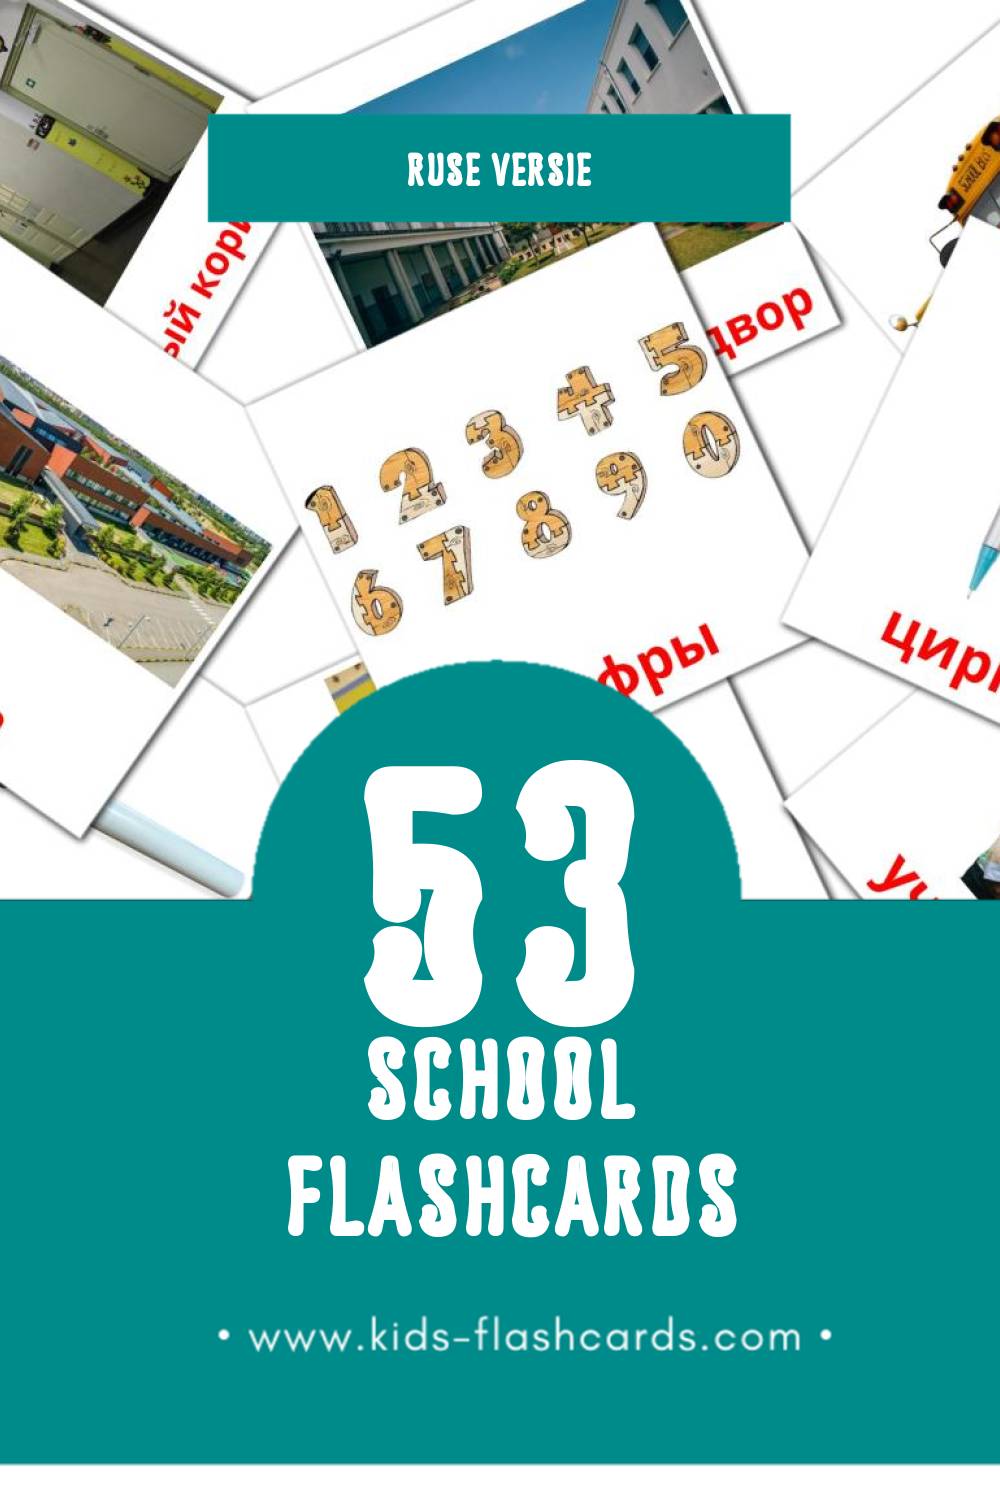 Visuele Школа Flashcards voor Kleuters (53 kaarten in het Rus)